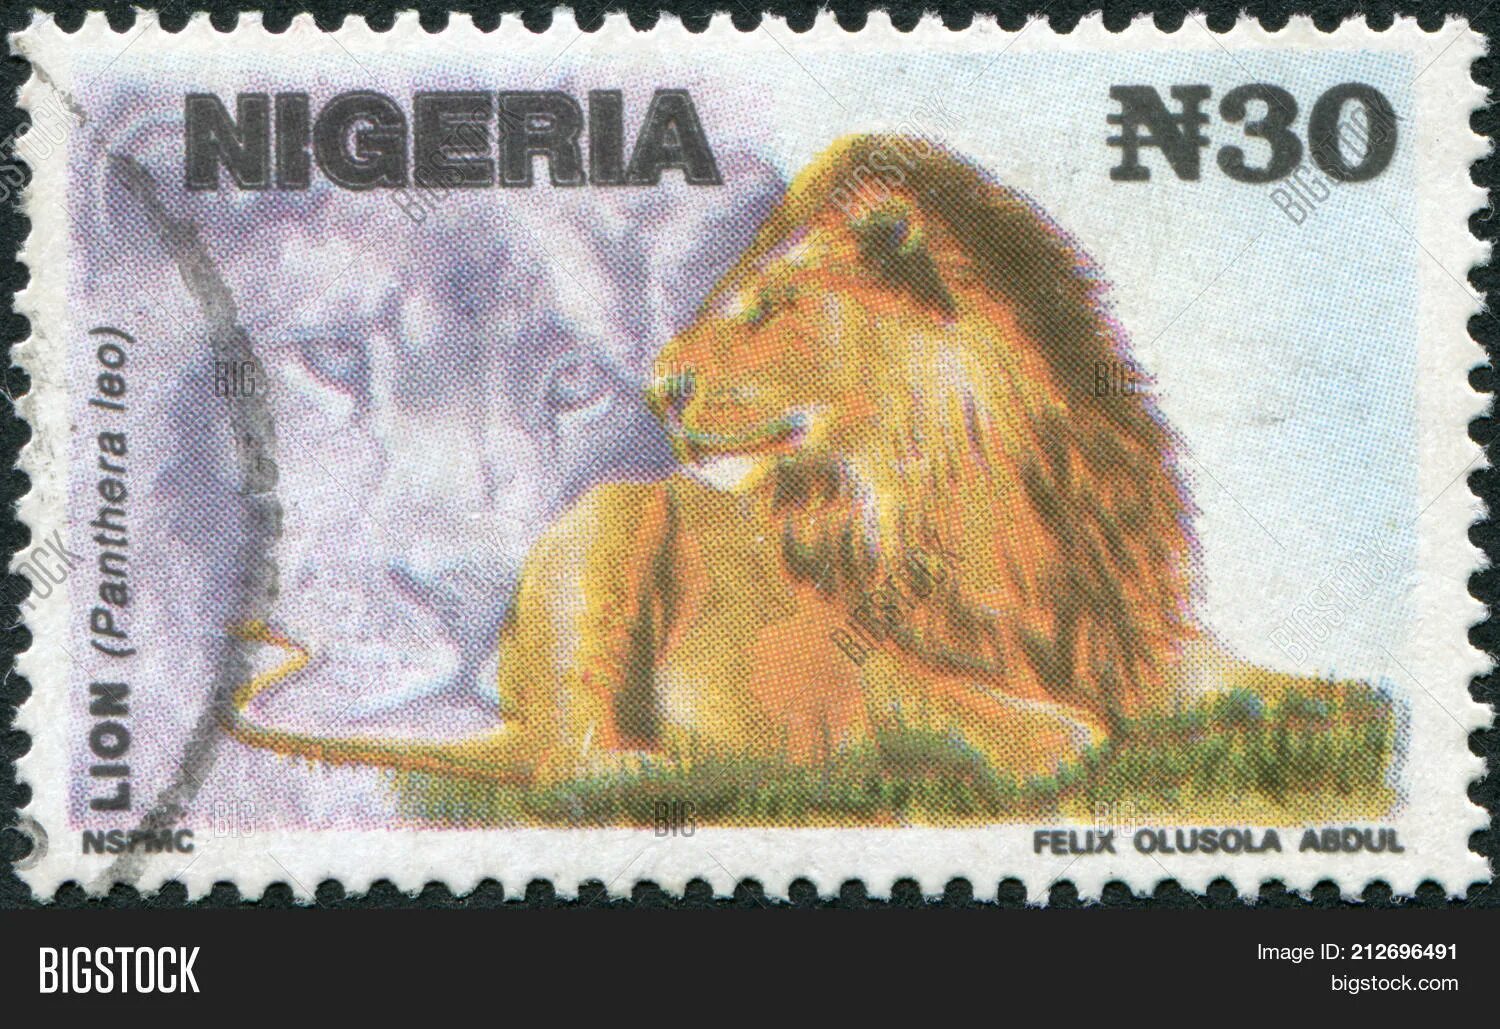 Лев 1993. Львы в Нигерии. Марка со львом.